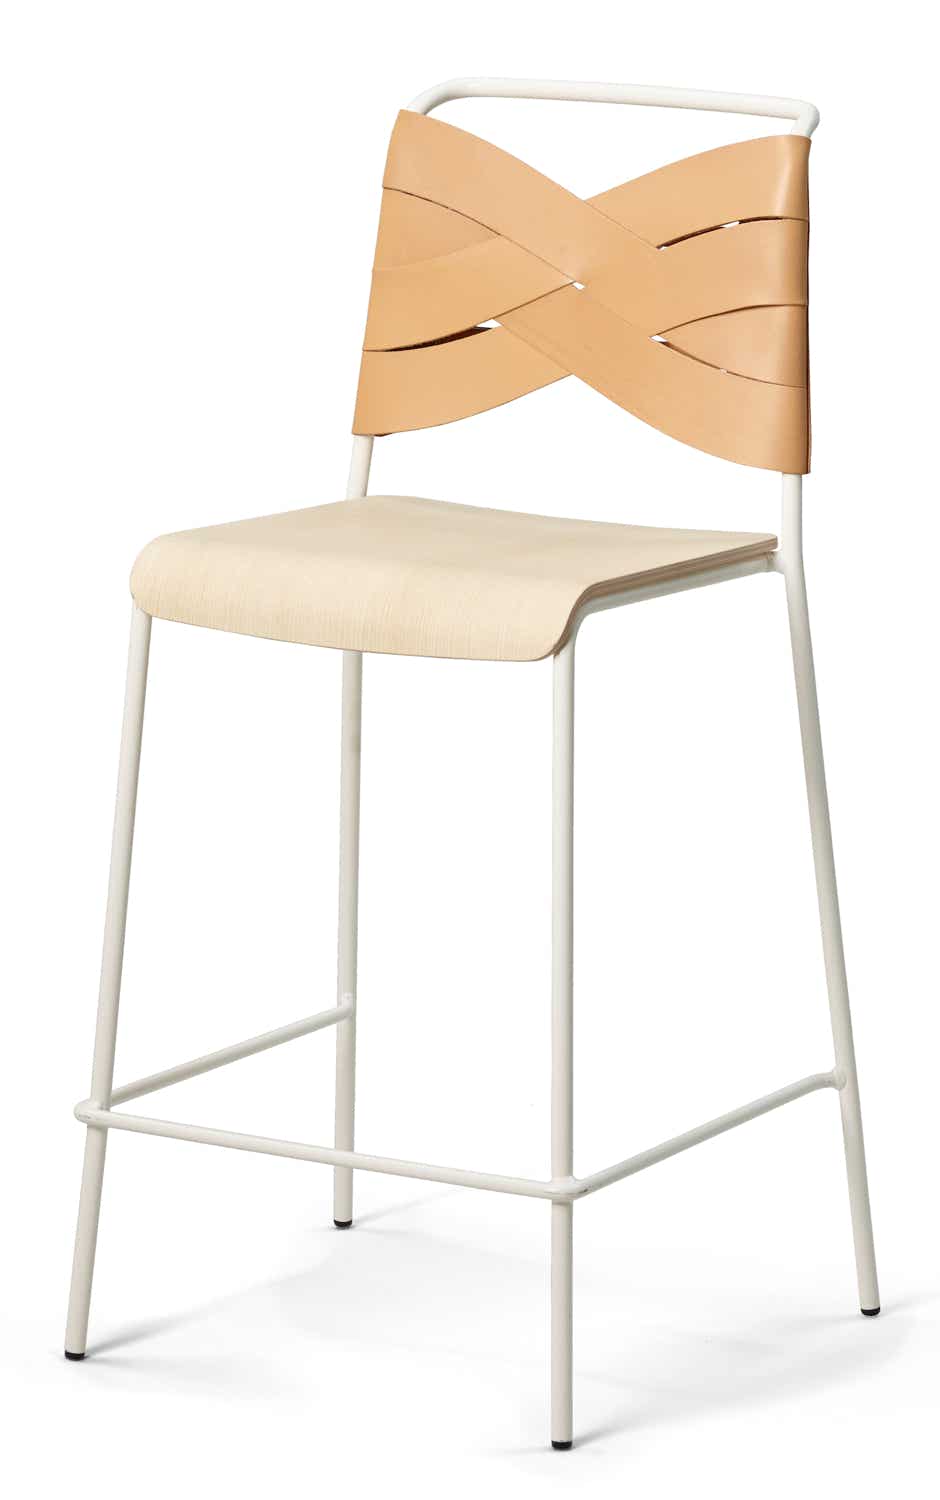 Torso chair and bar stool Lisa Hilland, 2017